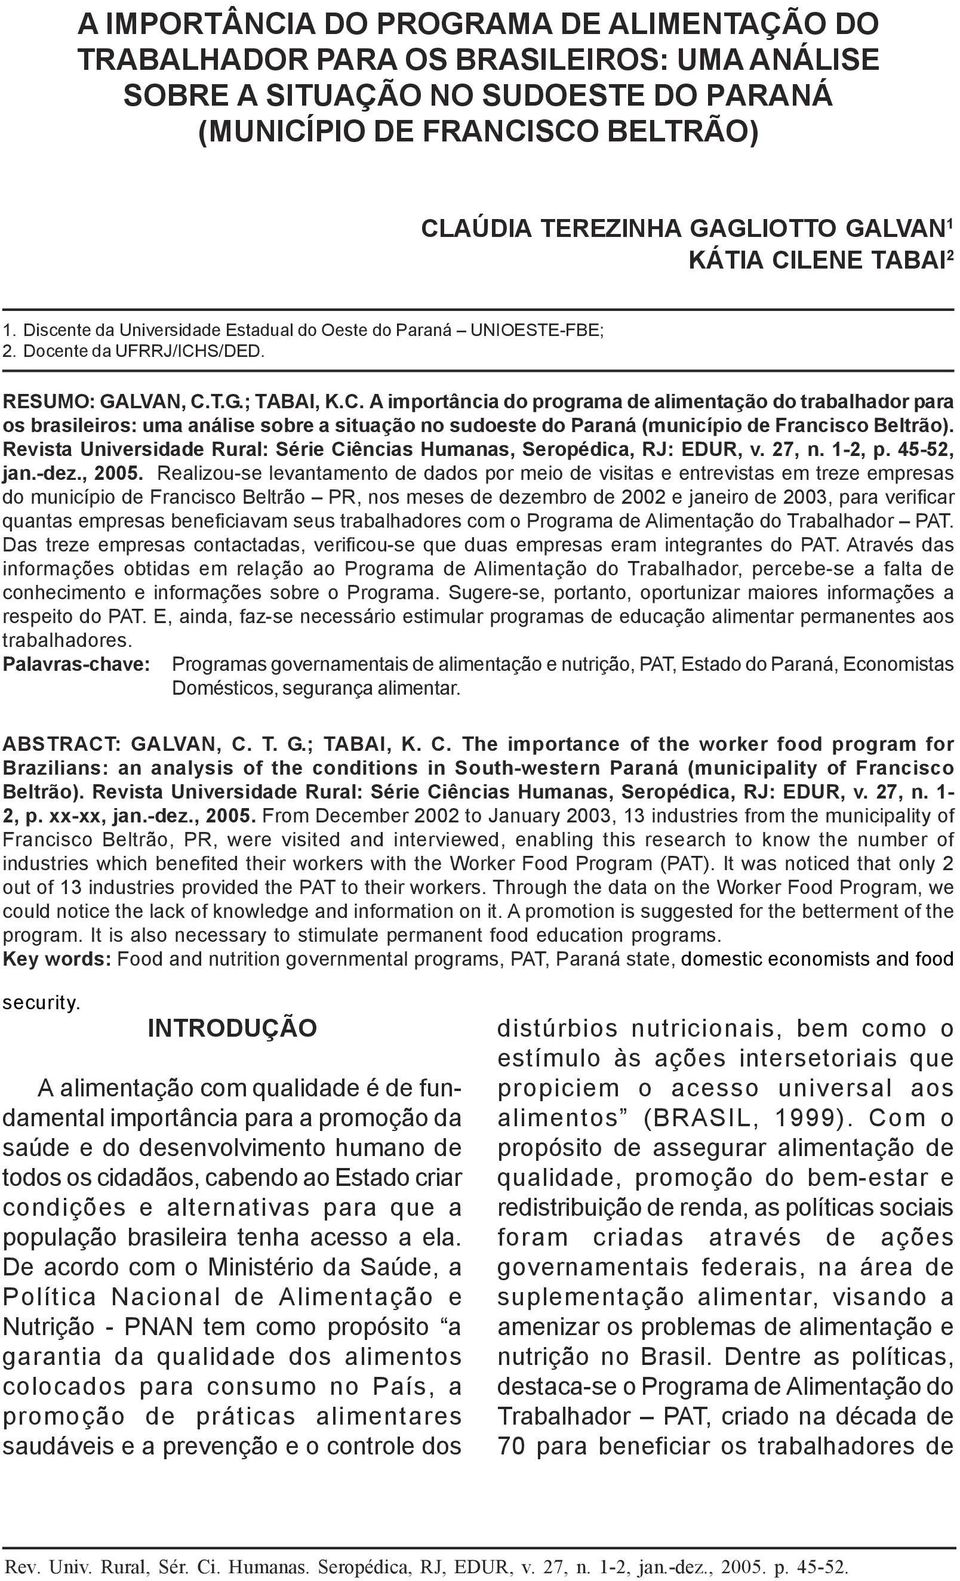 1 A IMPORTÂNCIA DO PROGRAMA DE ALIMENTAÇÃO DO TRABALHADOR PARA OS BRASILEIROS: UMA ANÁLISE SOBRE A SITUAÇÃO NO SUDOESTE DO PARANÁ (MUNICÍPIO DE FRANCISCO BELTRÃO) CLAÚDIA TEREZINHA GAGLIOTTO GALVAN 1